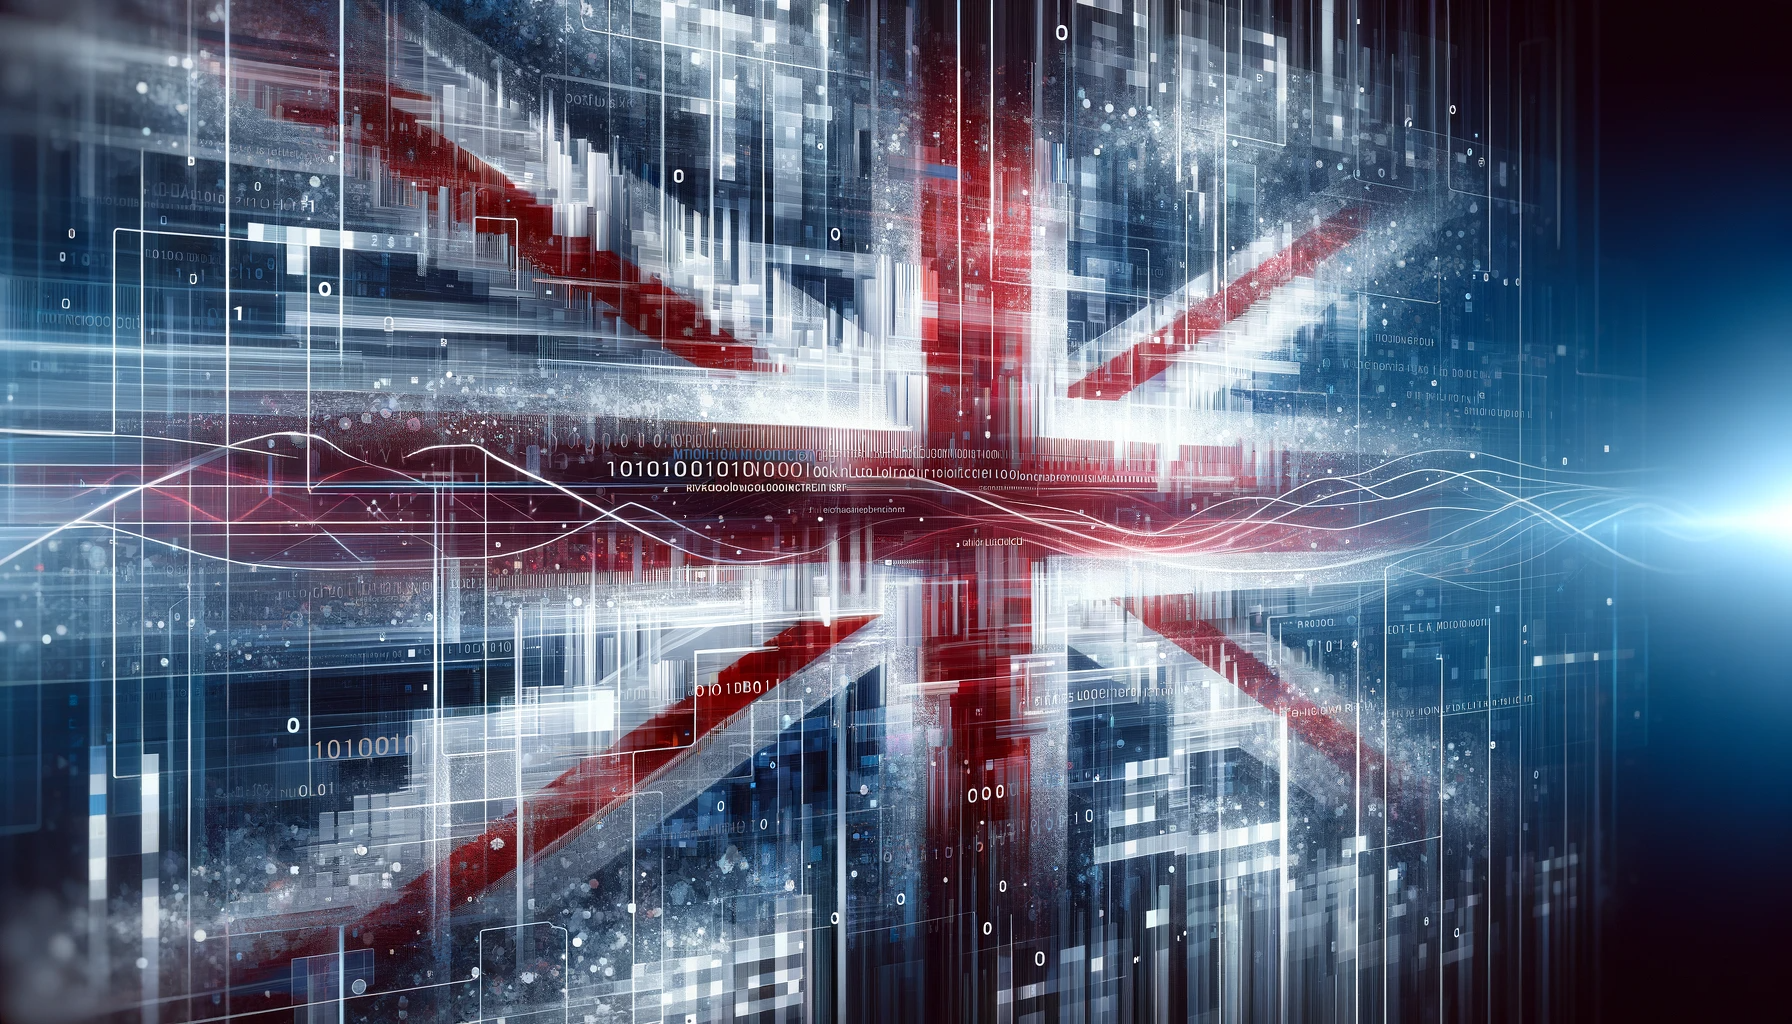 Britische Regierung: Reproduktion von Inhalten durch KI-Systeme verstößt gegen Urheberrecht